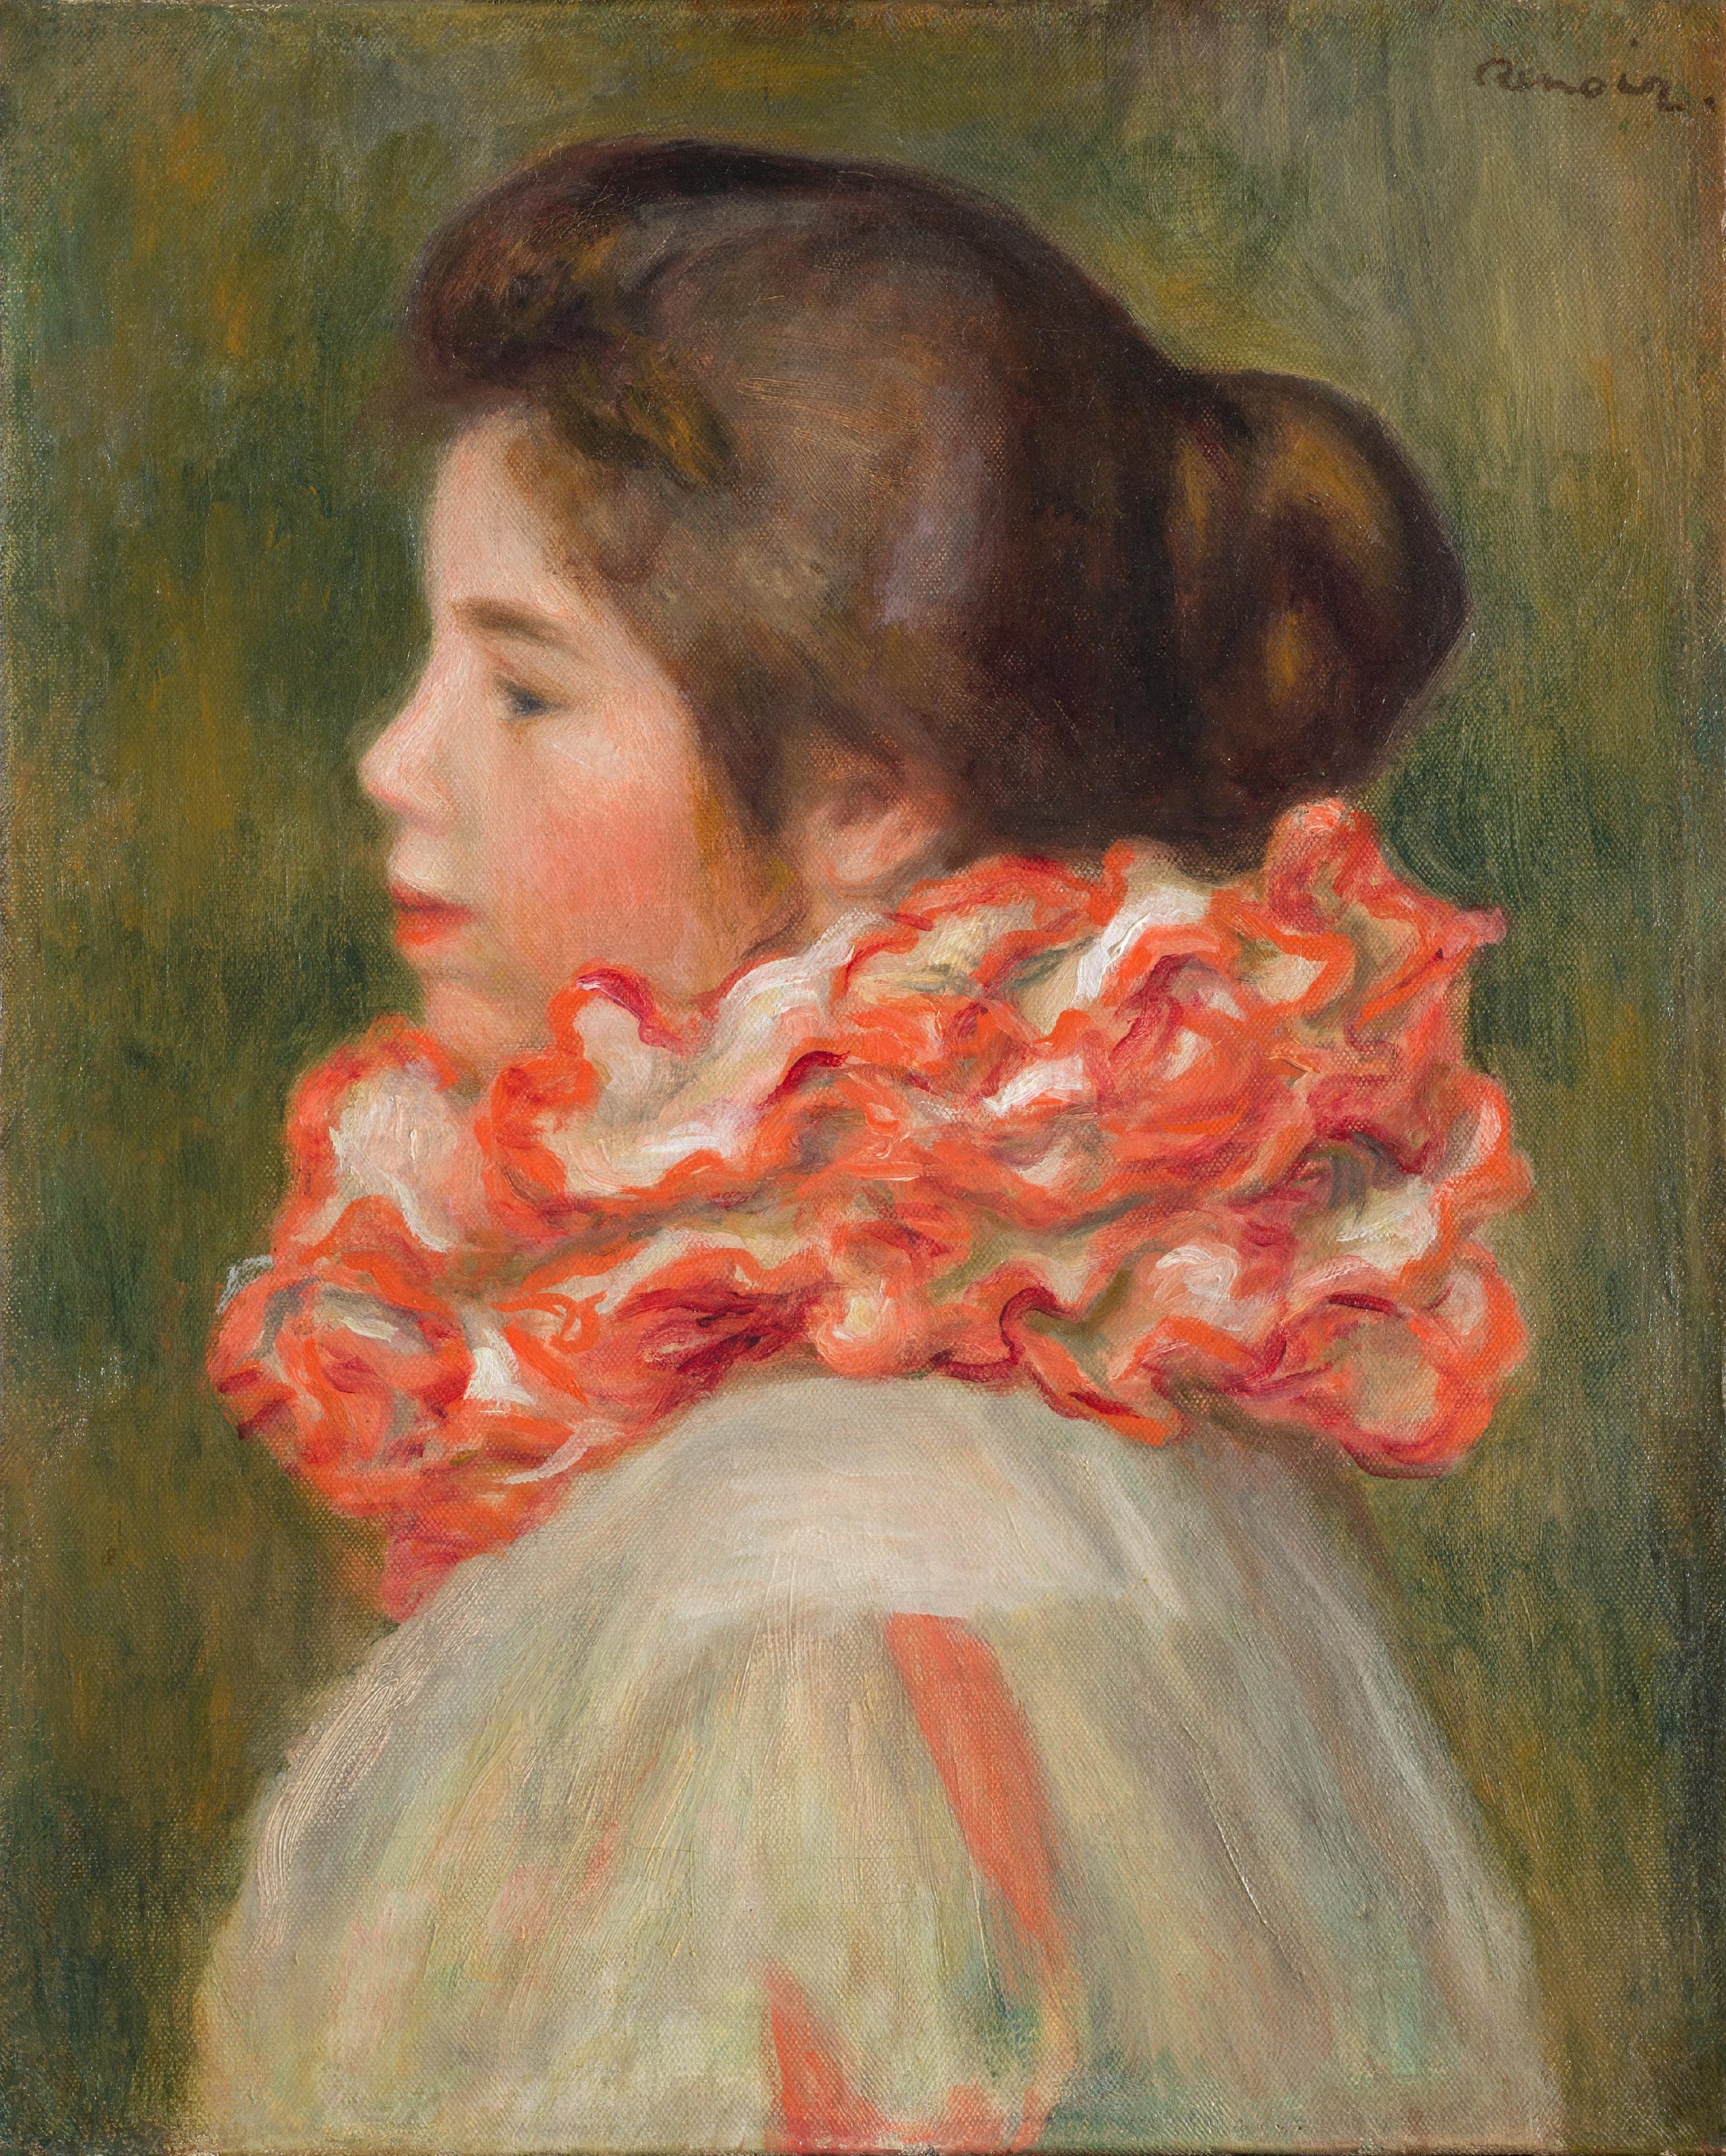 Niña con gola roja by Pierre-Auguste Renoir - c. 1896 - 41,3 x 33,3 cm Museo de Arte de Filadelfia